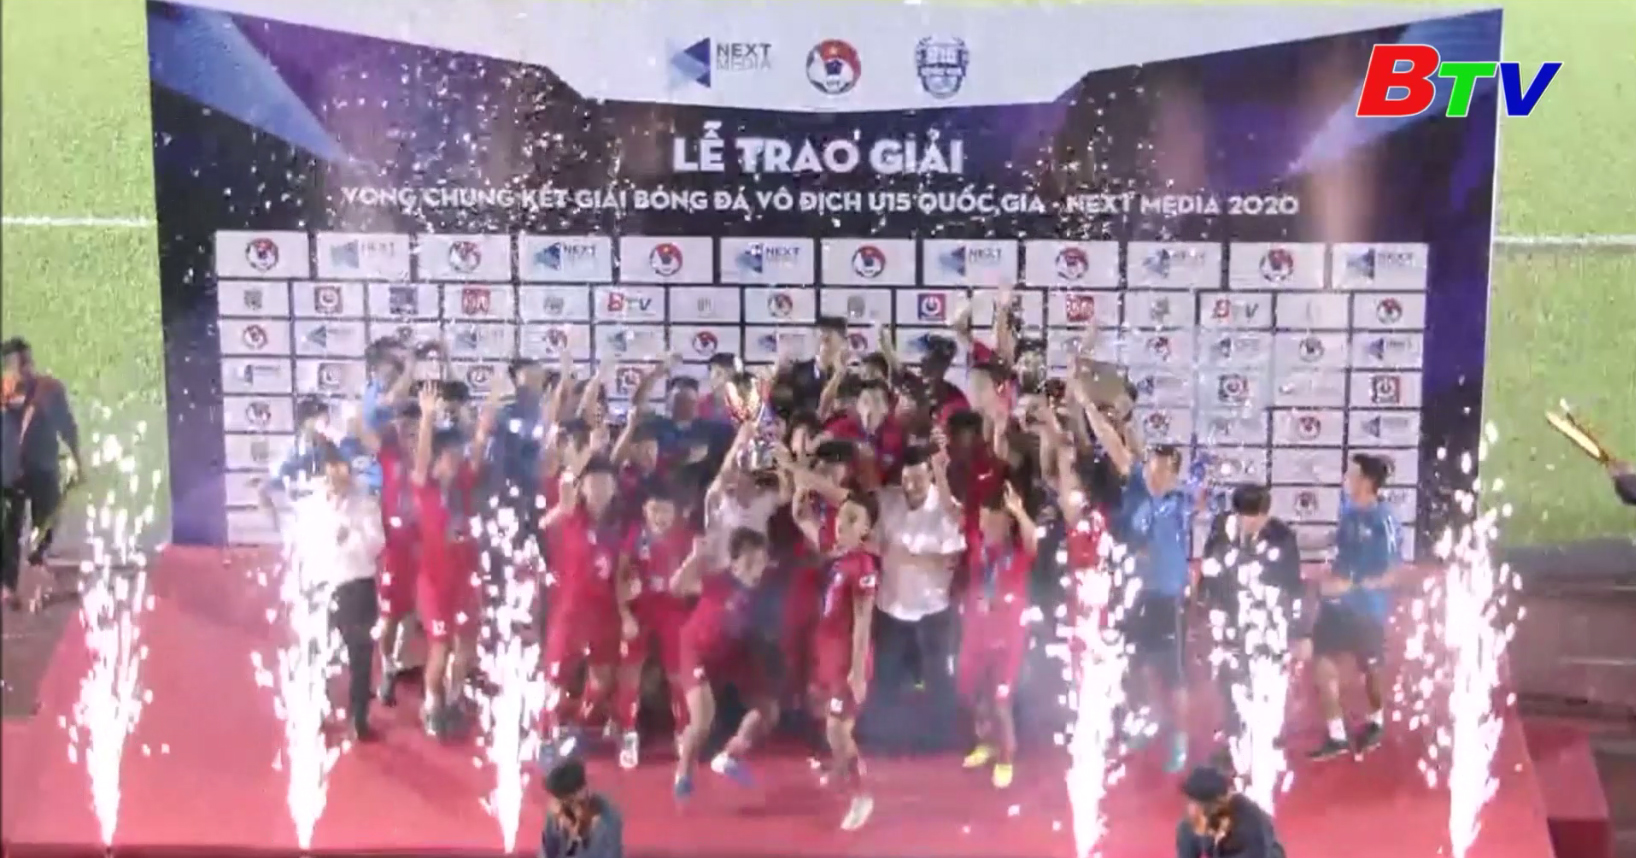 U15 PVF đăng quang ngôi vô địch Giải bóng đá U15 Quốc gia - Next Media 2020